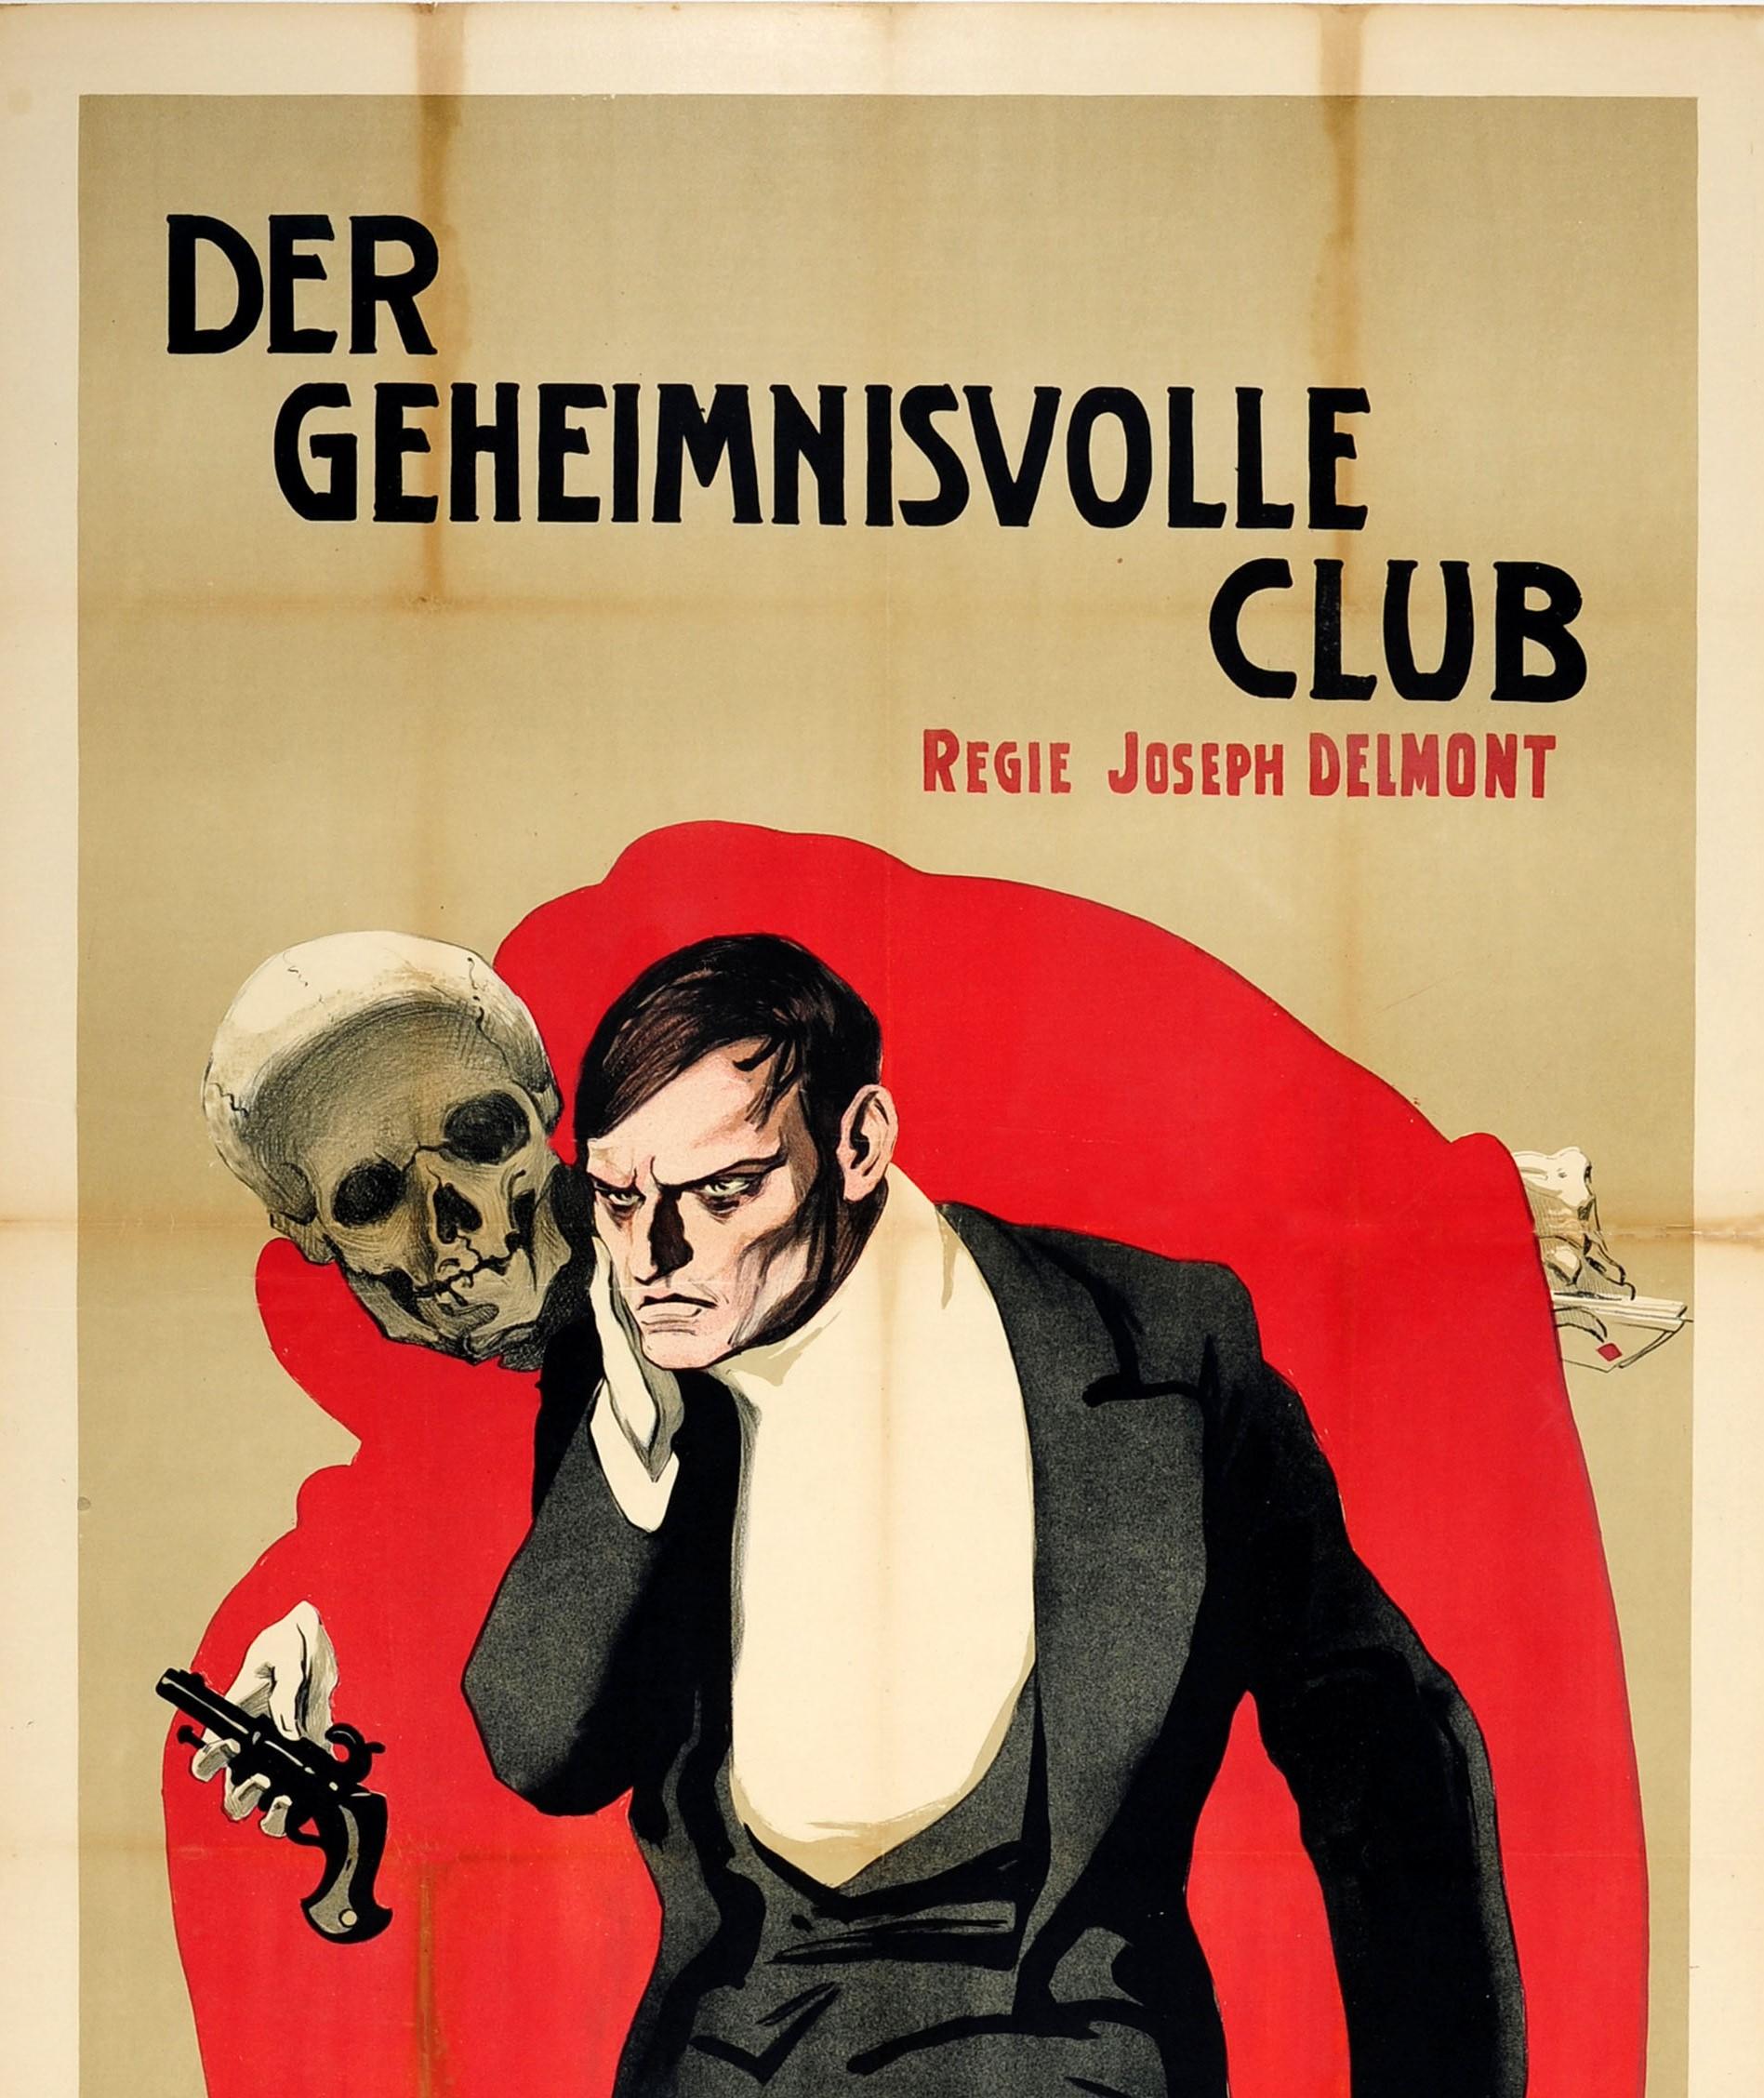 Original Antique Movie Poster Der Geheimnisvolle Club Delmont R L Stevenson Book - Print by Unknown